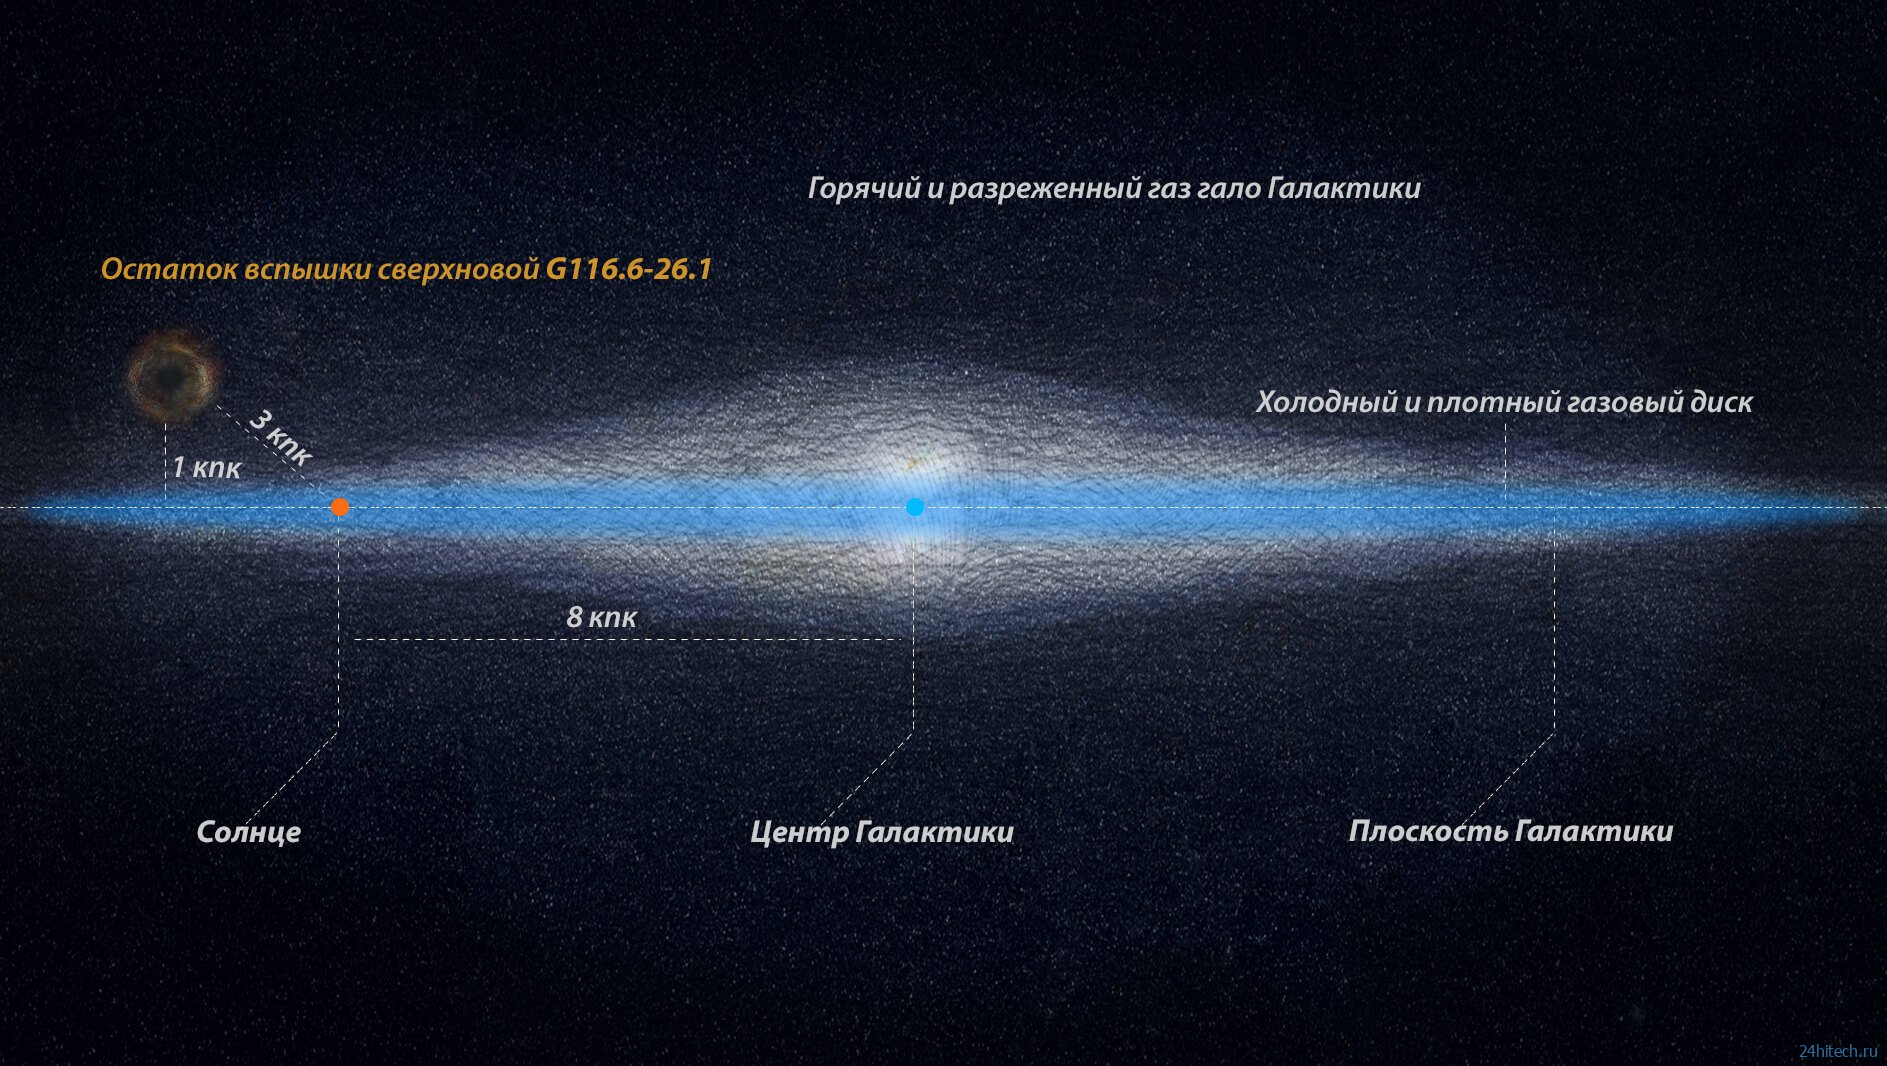 Над галактикой Млечный Путь ученые обнаружили необычный объект 